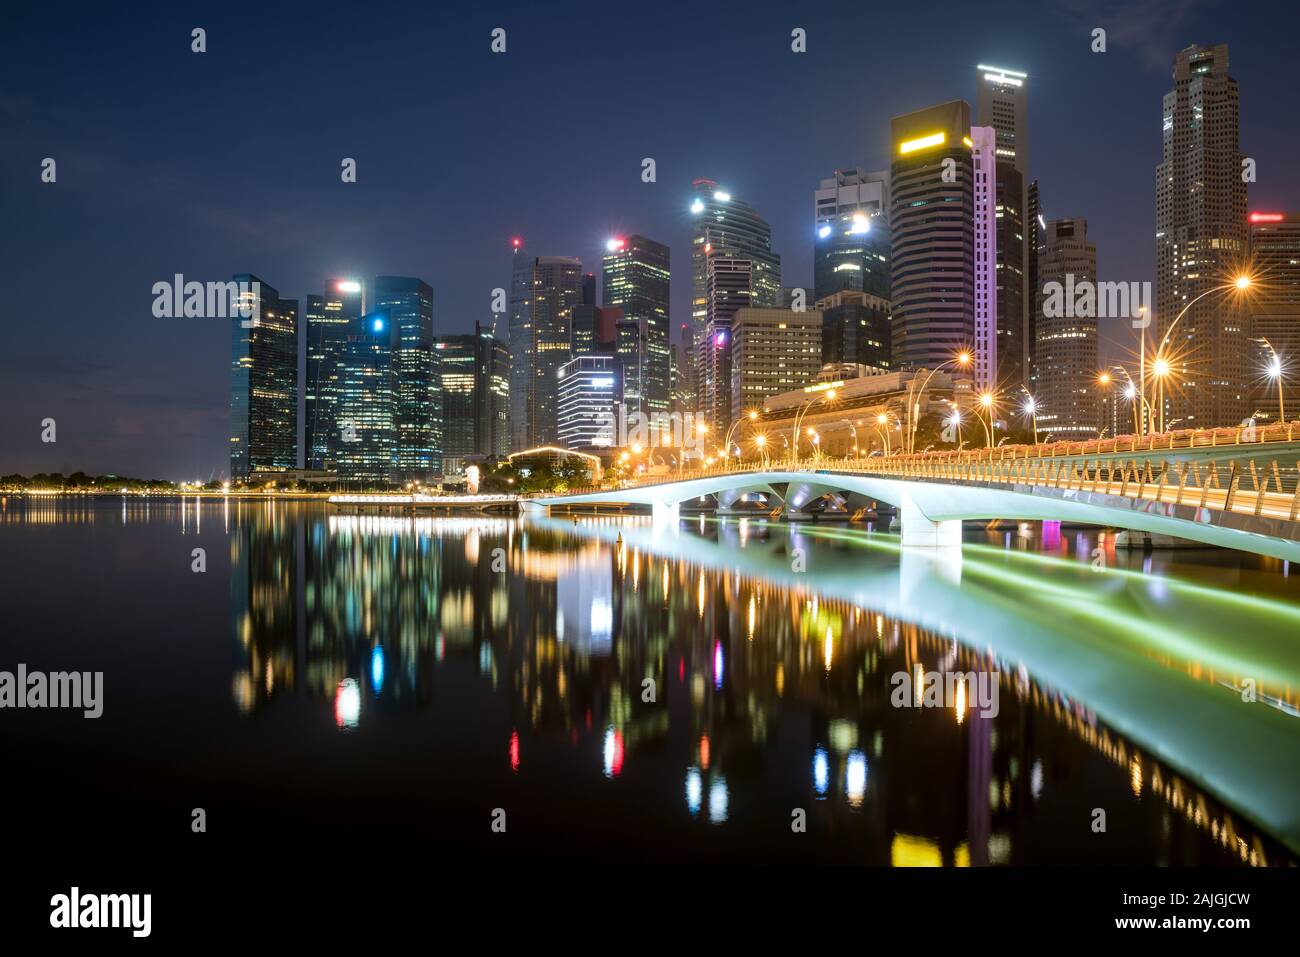 Quartier des affaires de Singapour skyline downtown financière avec des capacités en touristique nuit à Marina Bay, Singapour. Le tourisme asiatique, ville moderne Banque D'Images